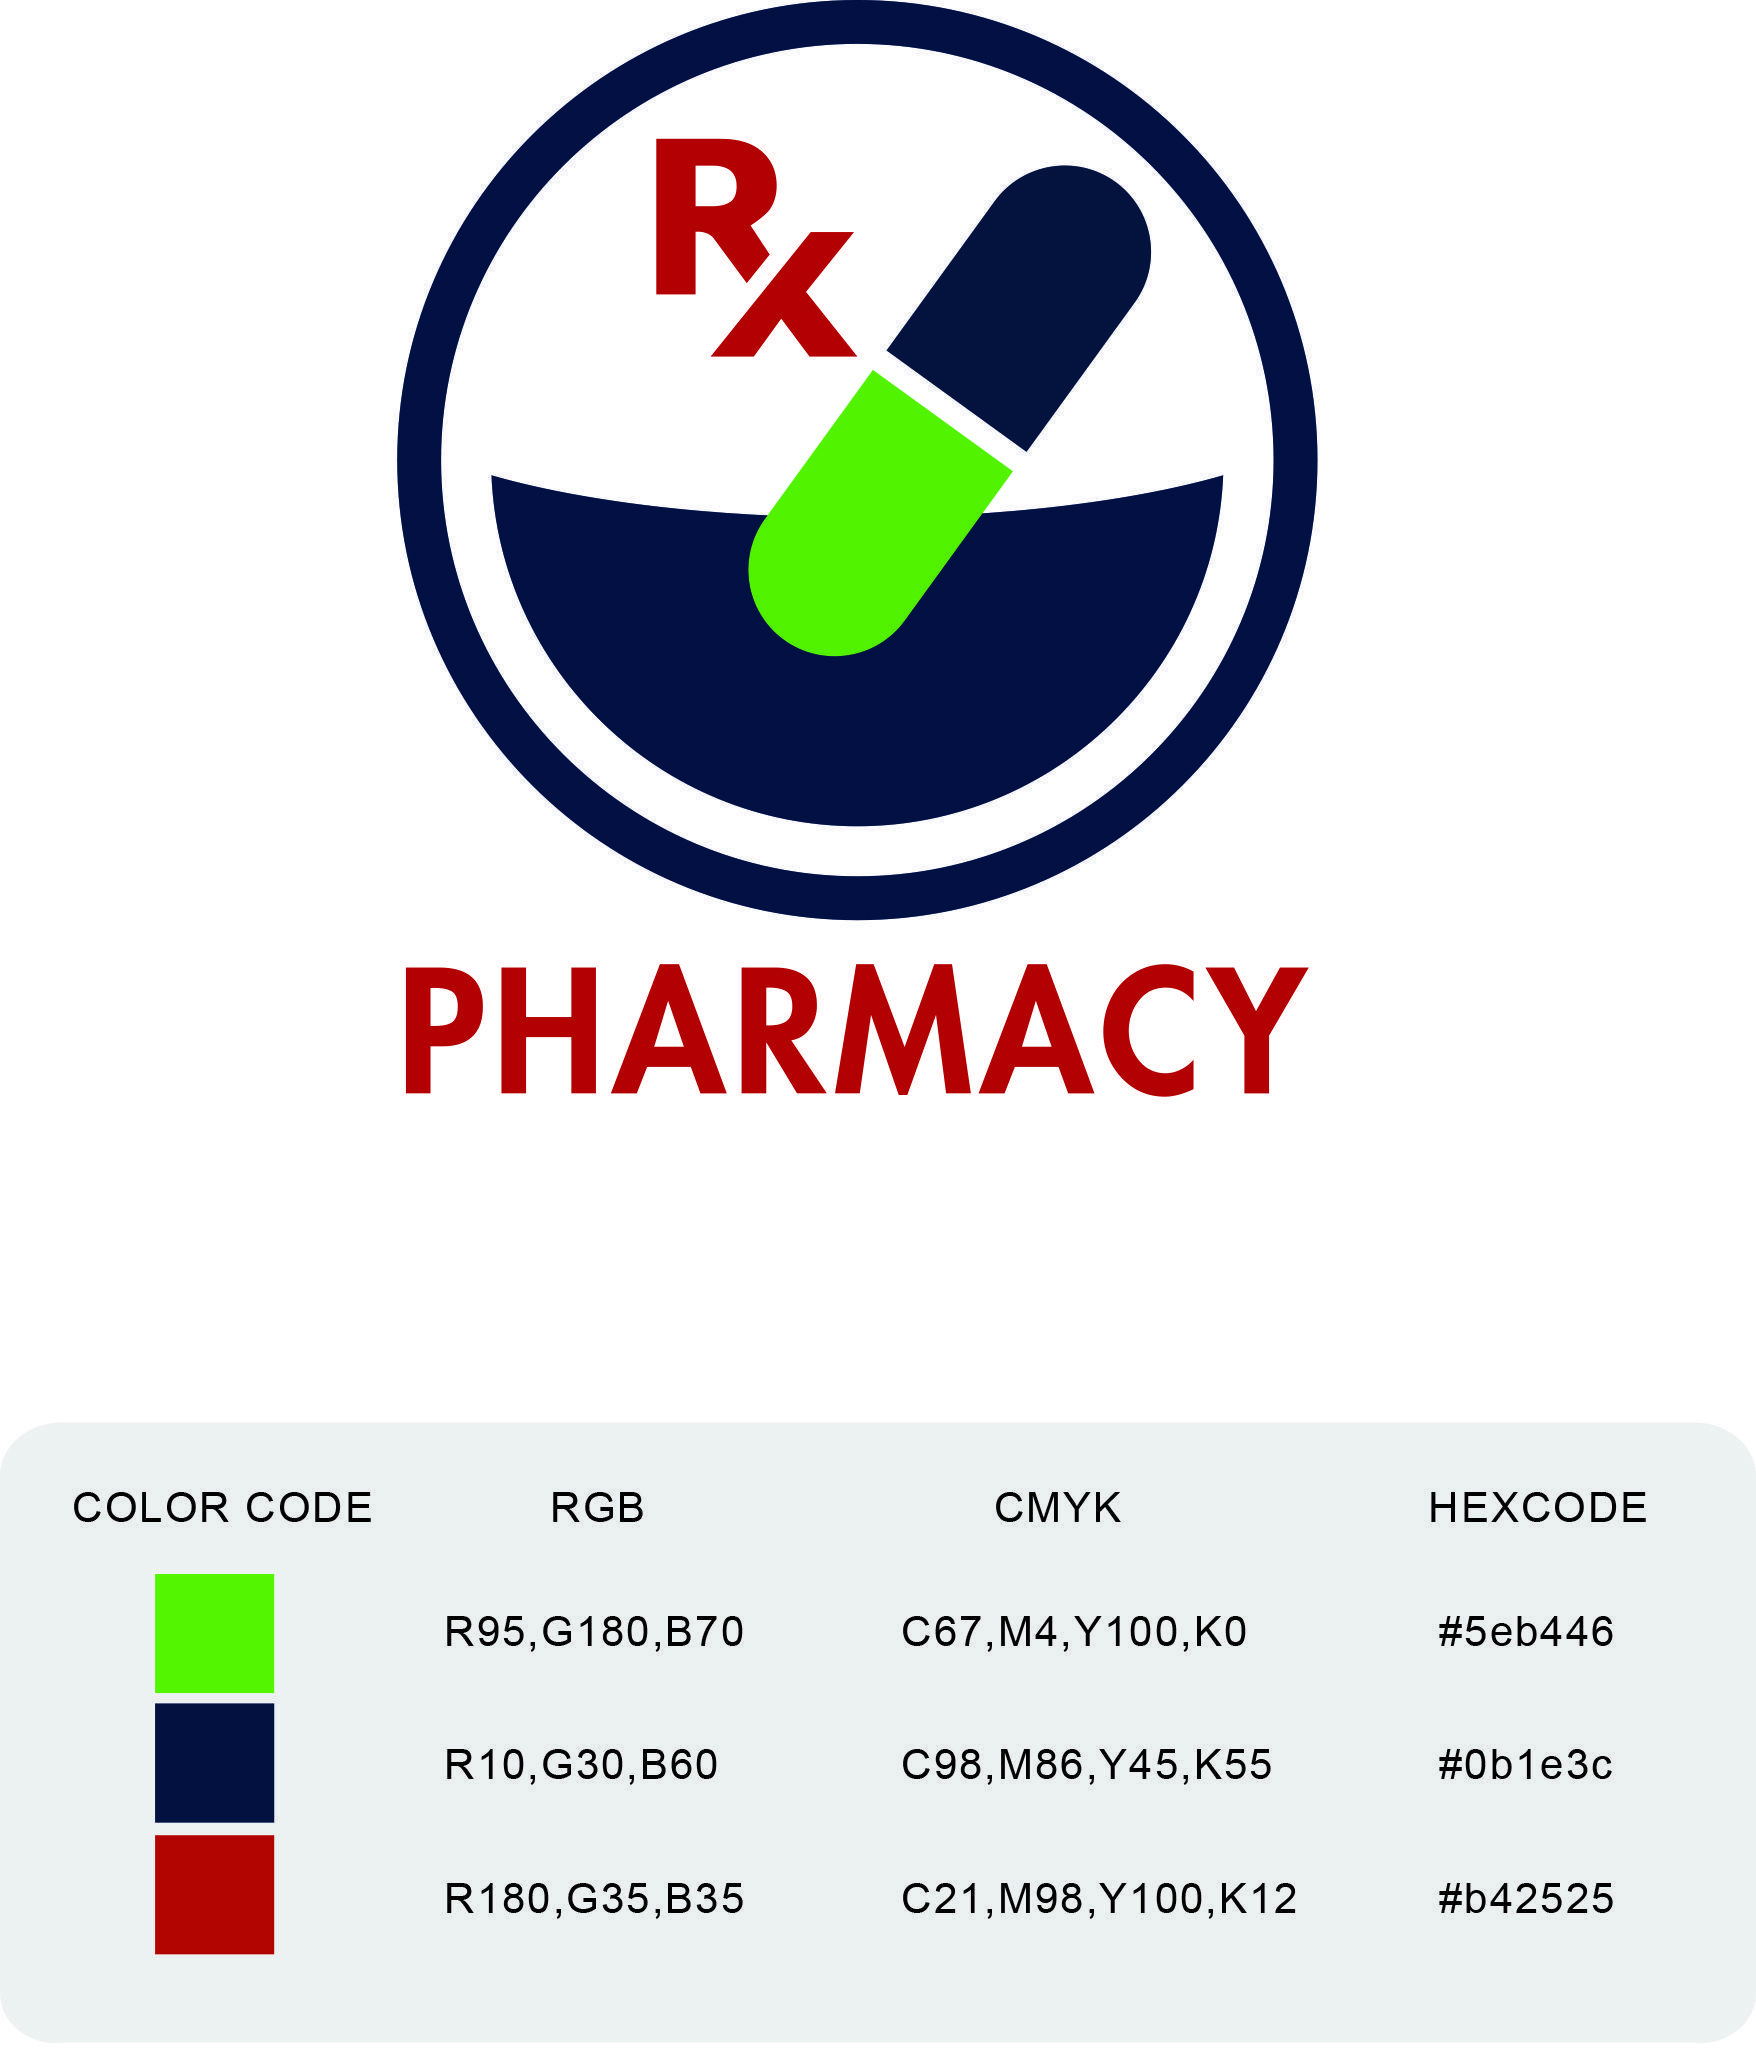 Pharmacist Logo - Malaysian Pharmaceutical Society